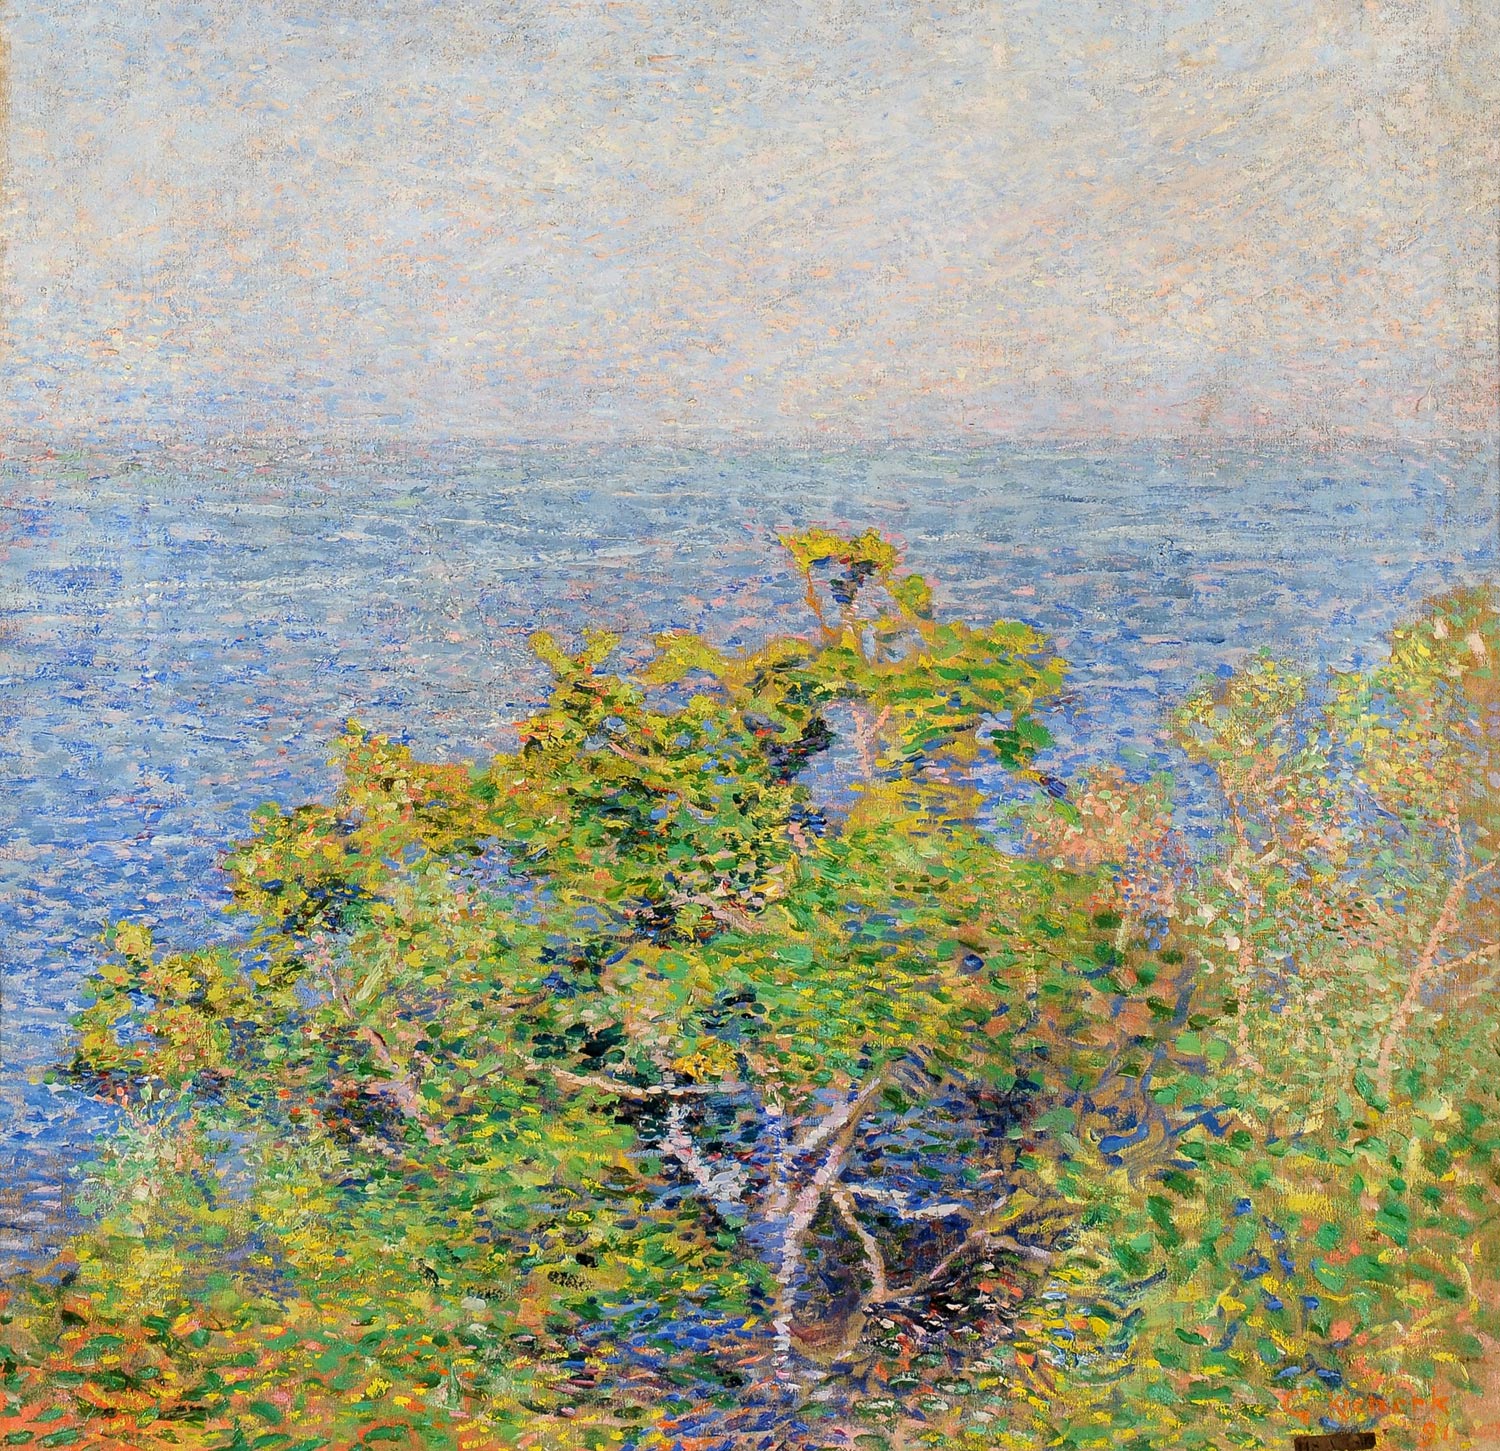 Giorgio Kienerk, Alberi sul mare (1891; olio su tela, 45 x 47 cm; Fauglia, Museo Civico “Giorgio Kienerk”)